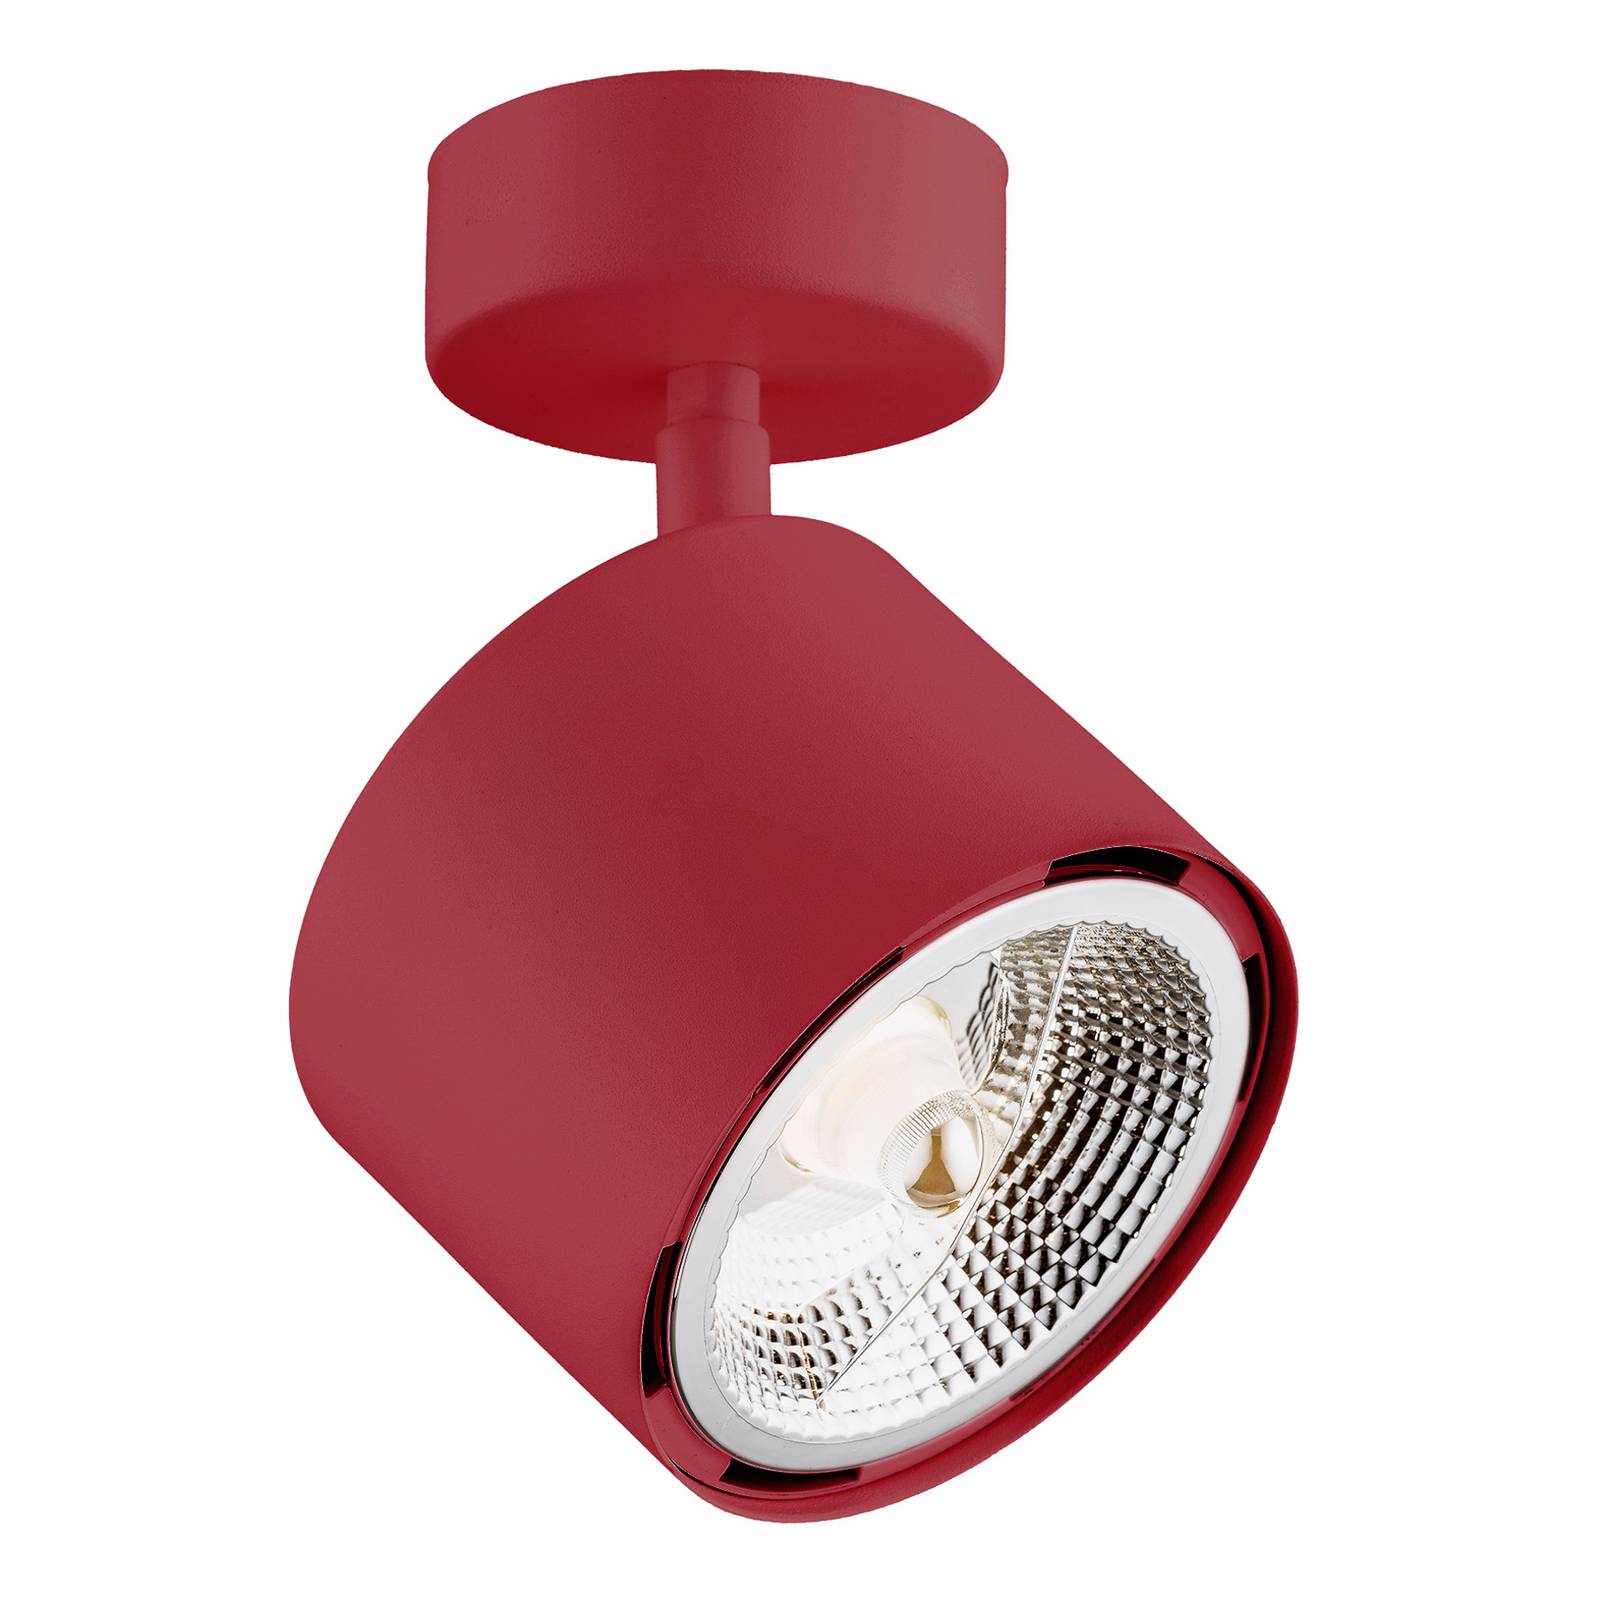 Argon Takspotlight Chloe justerbar 1 lampa röd